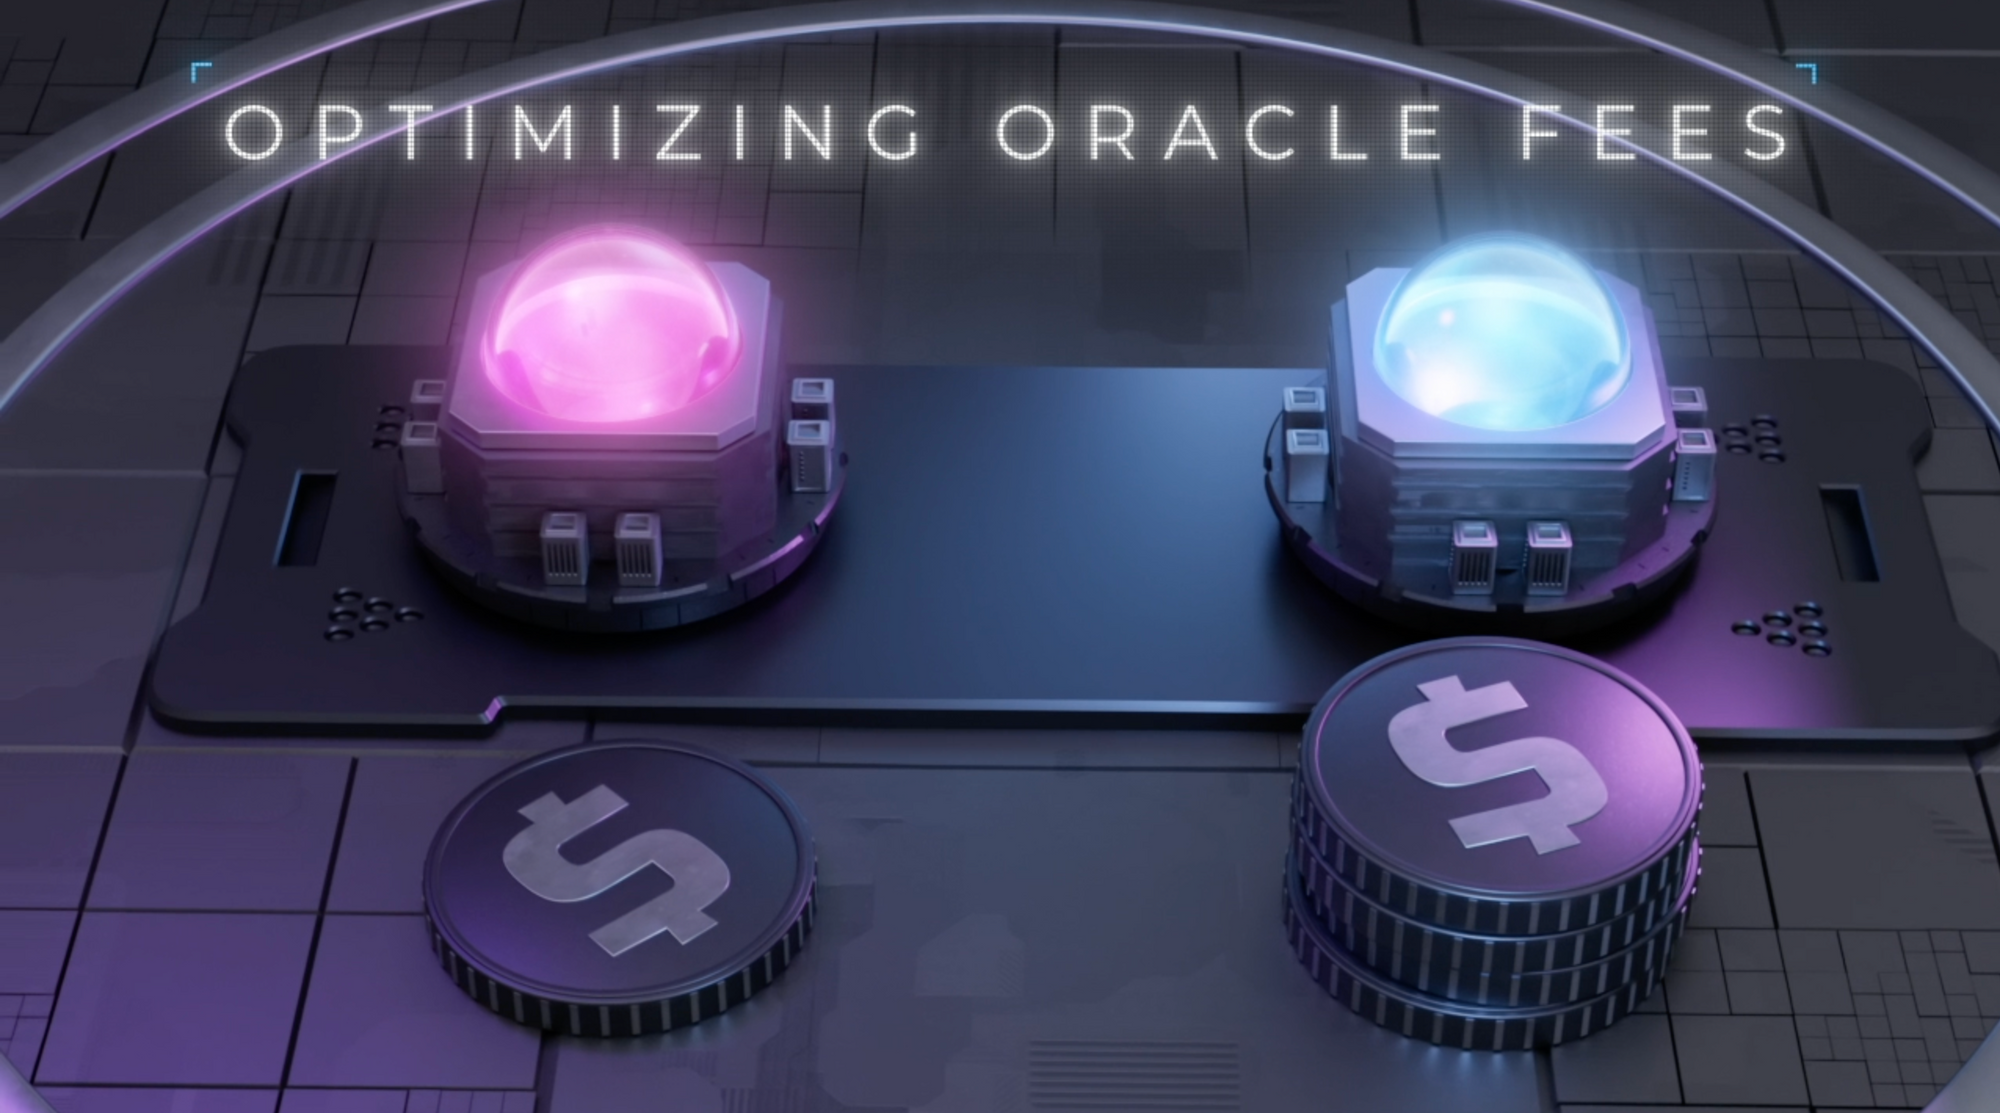 Optimizing Oracle Fees